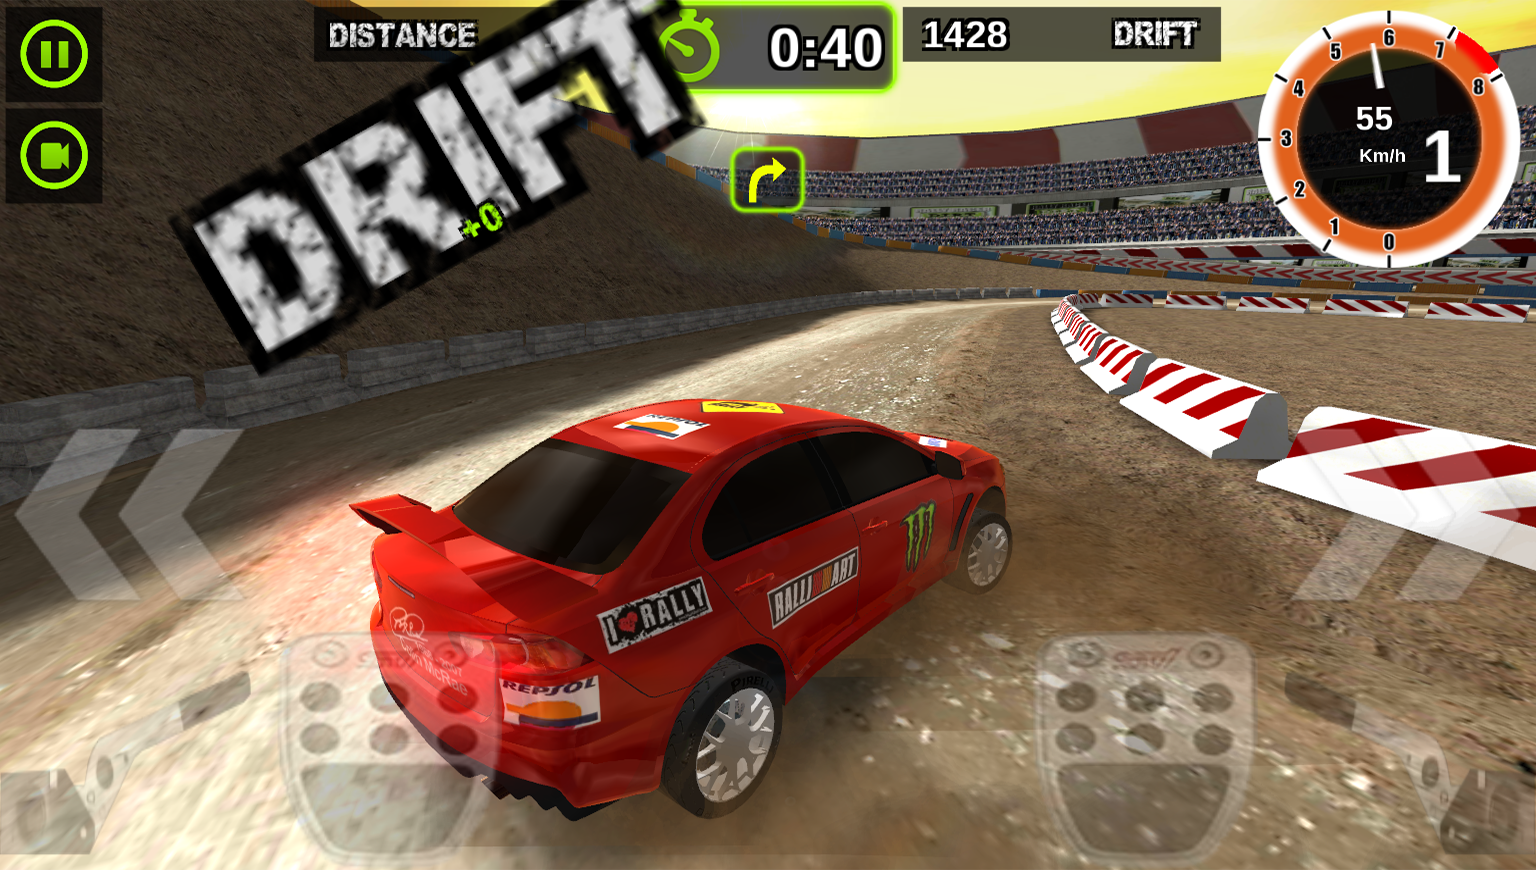   Rally Racer Dirt- screenshot 